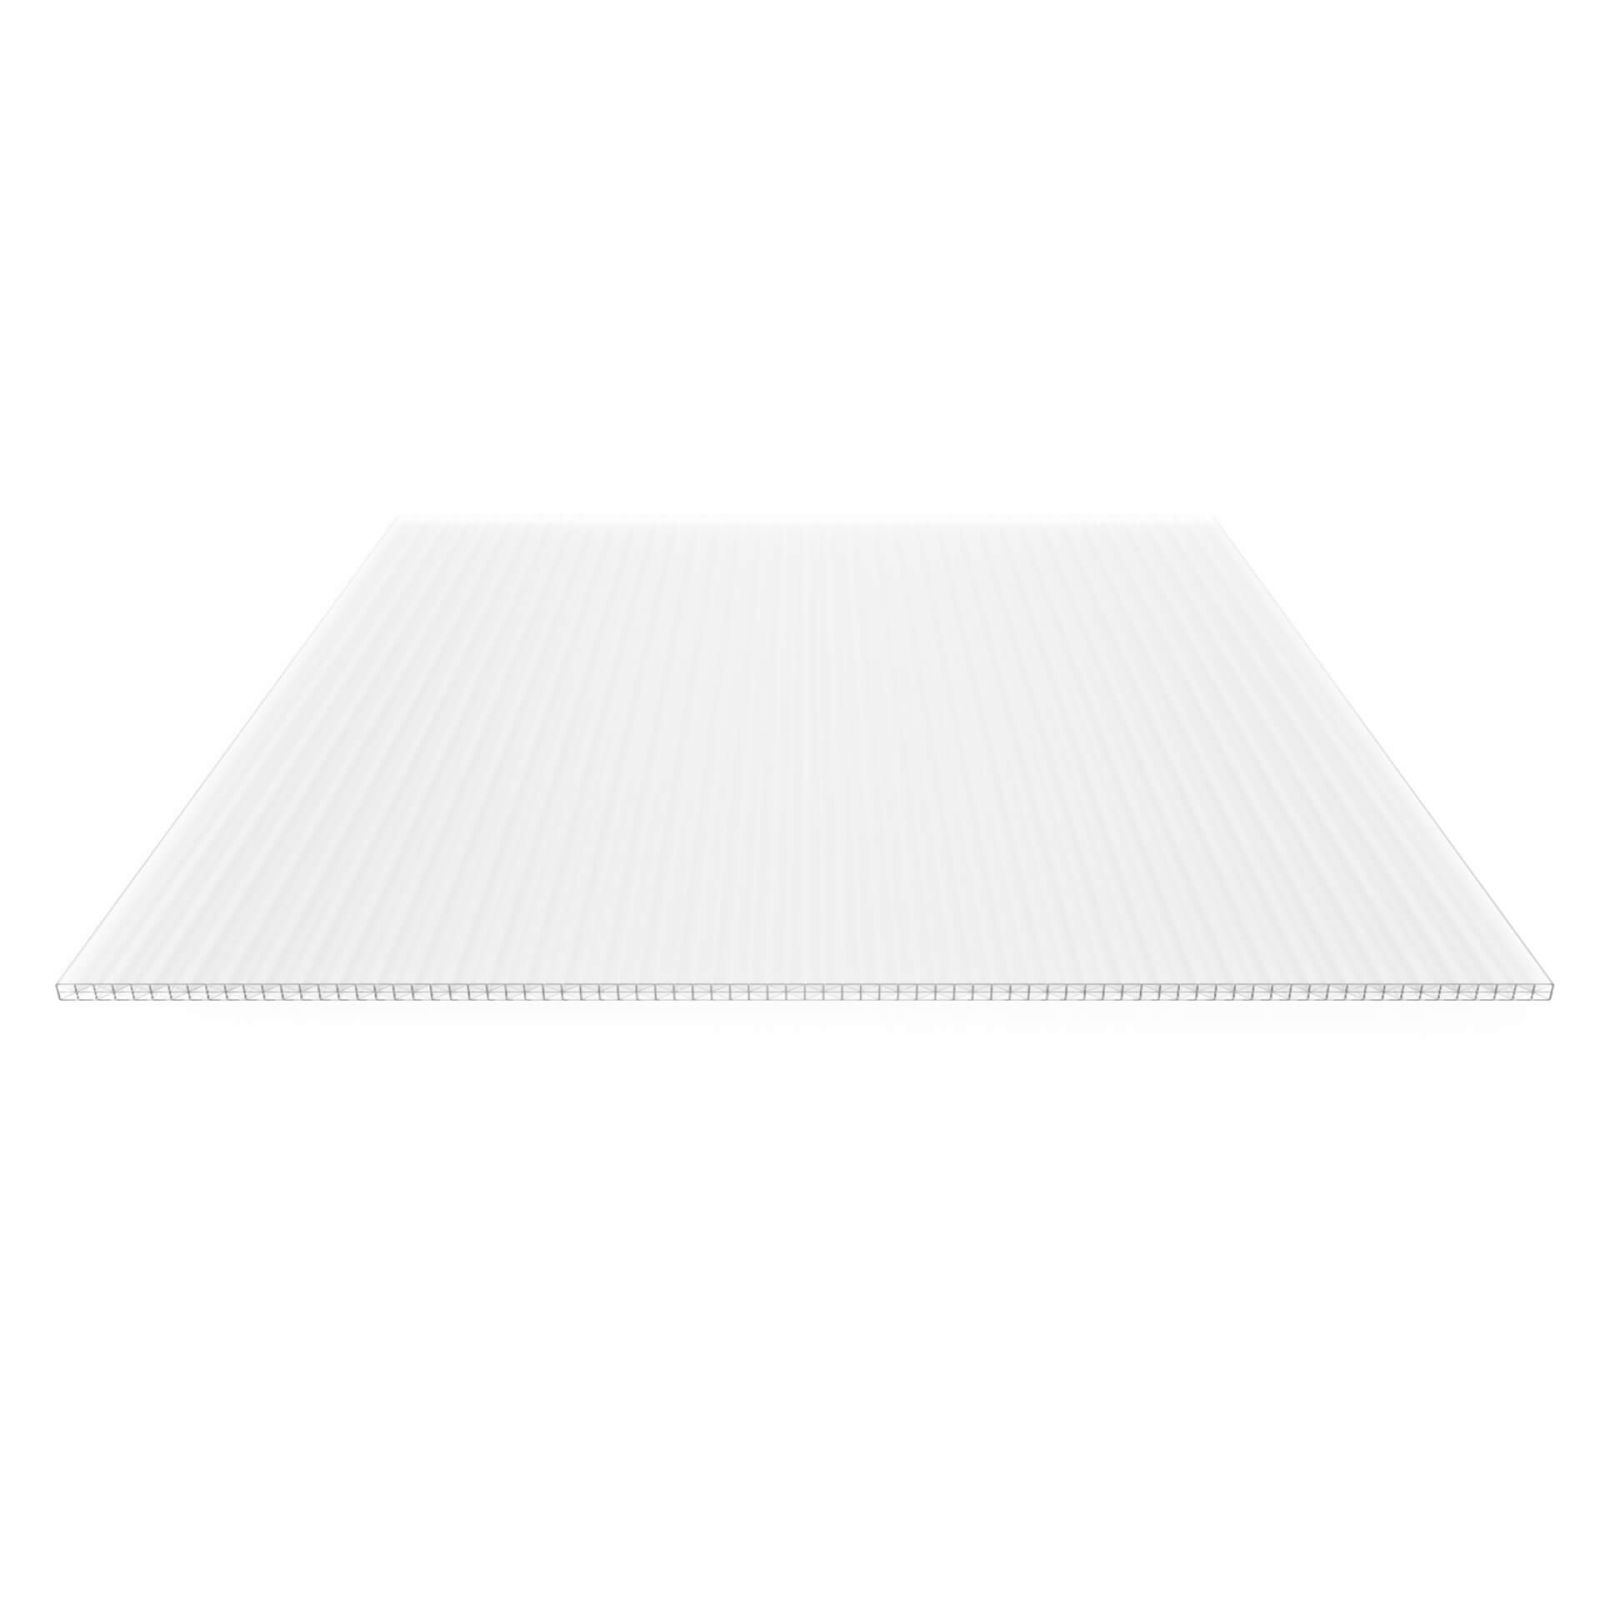 Polycarbonat Stegplatte | 16 mm | Profil Zevener Sprosse | Sparpaket | Plattenbreite 980 mm | Opal Weiß | Extra stark | Breite 3,13 m | Länge 2,00 m #5